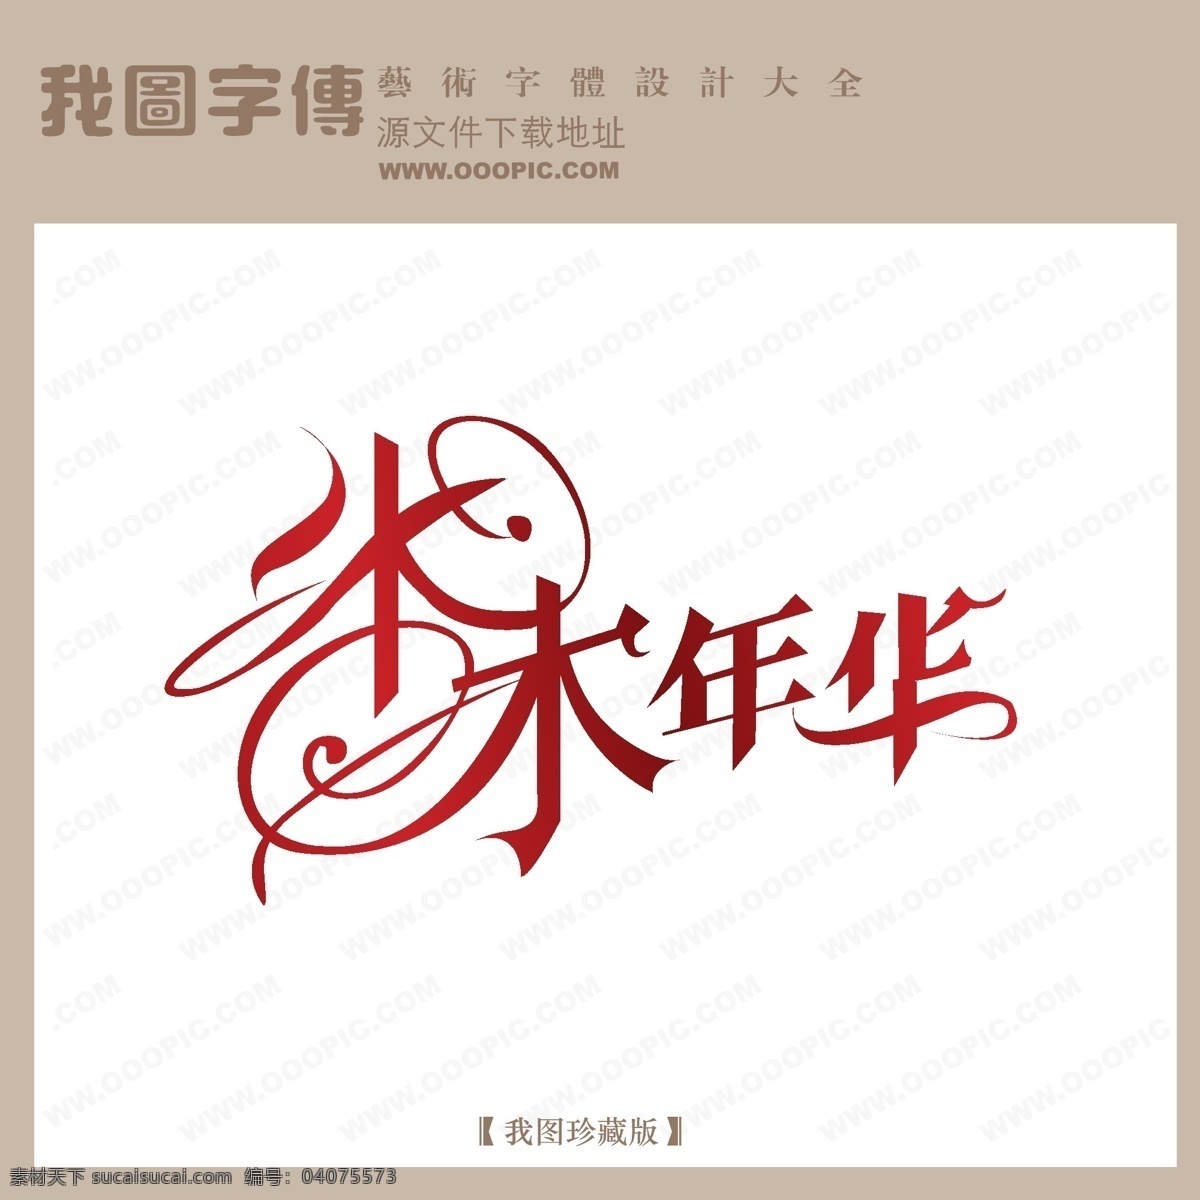 水木年华 字体 logo 艺术 字 创意艺术字 创意字体设计 非 主流 个性字体设计 艺术字 艺术字体设计 中文 现代艺术 字体设计图片 设计艺术 矢量图